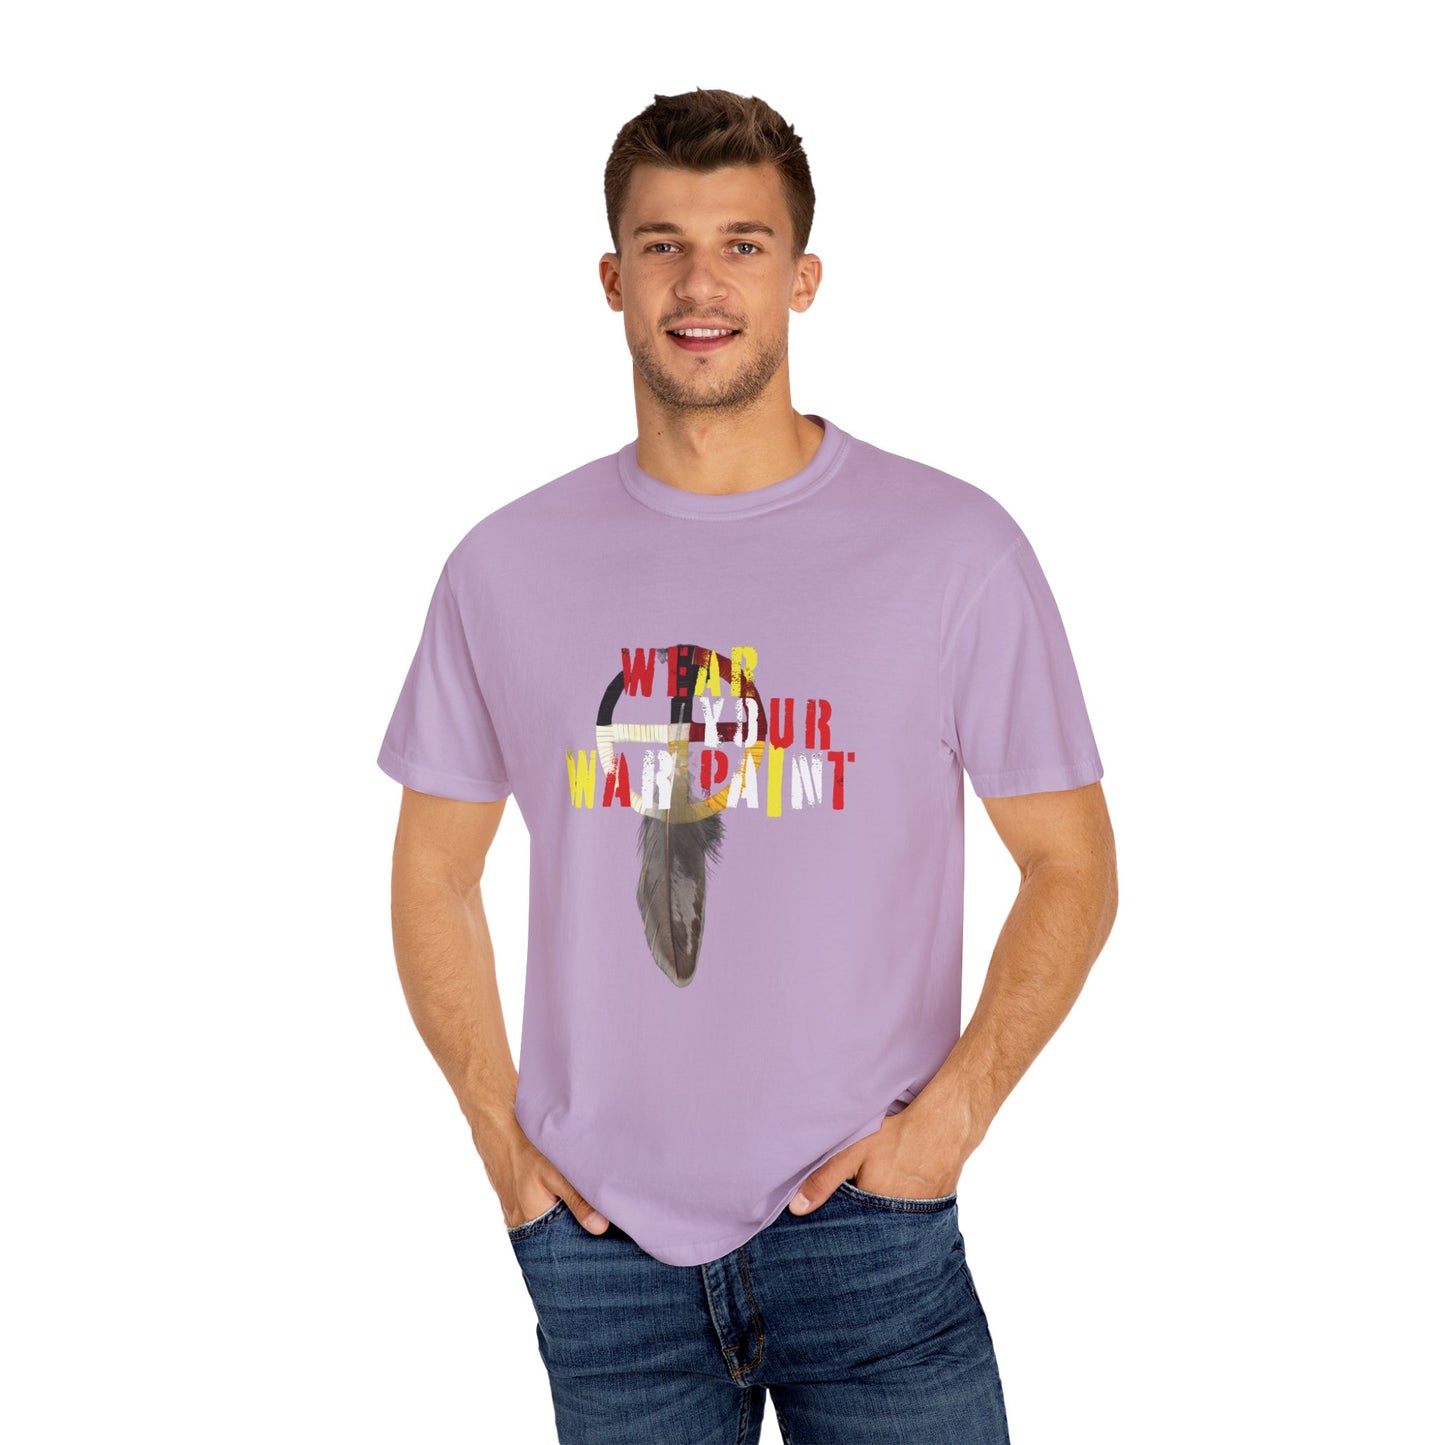 Wear Your WarPaint - Unisex Garment-Dyed T-shirt